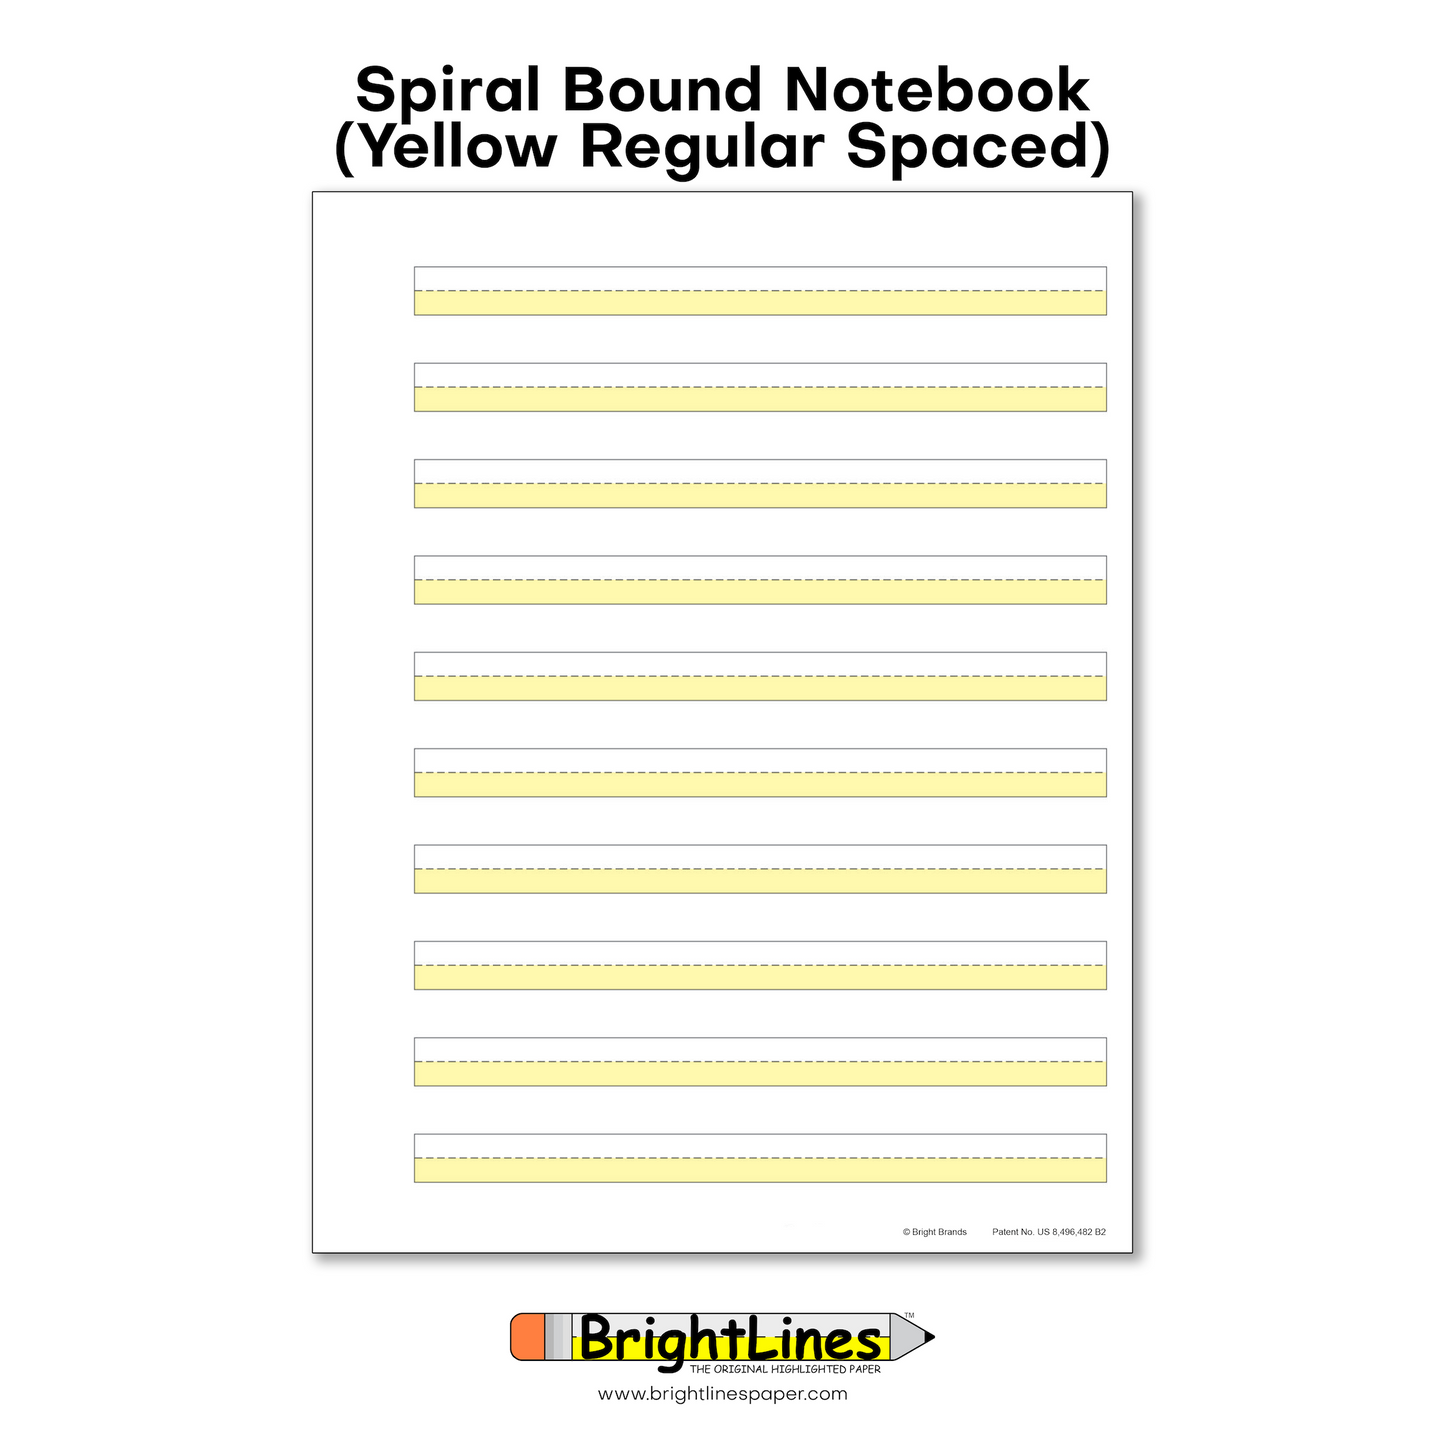 BrightLines - Spiral Notebooks